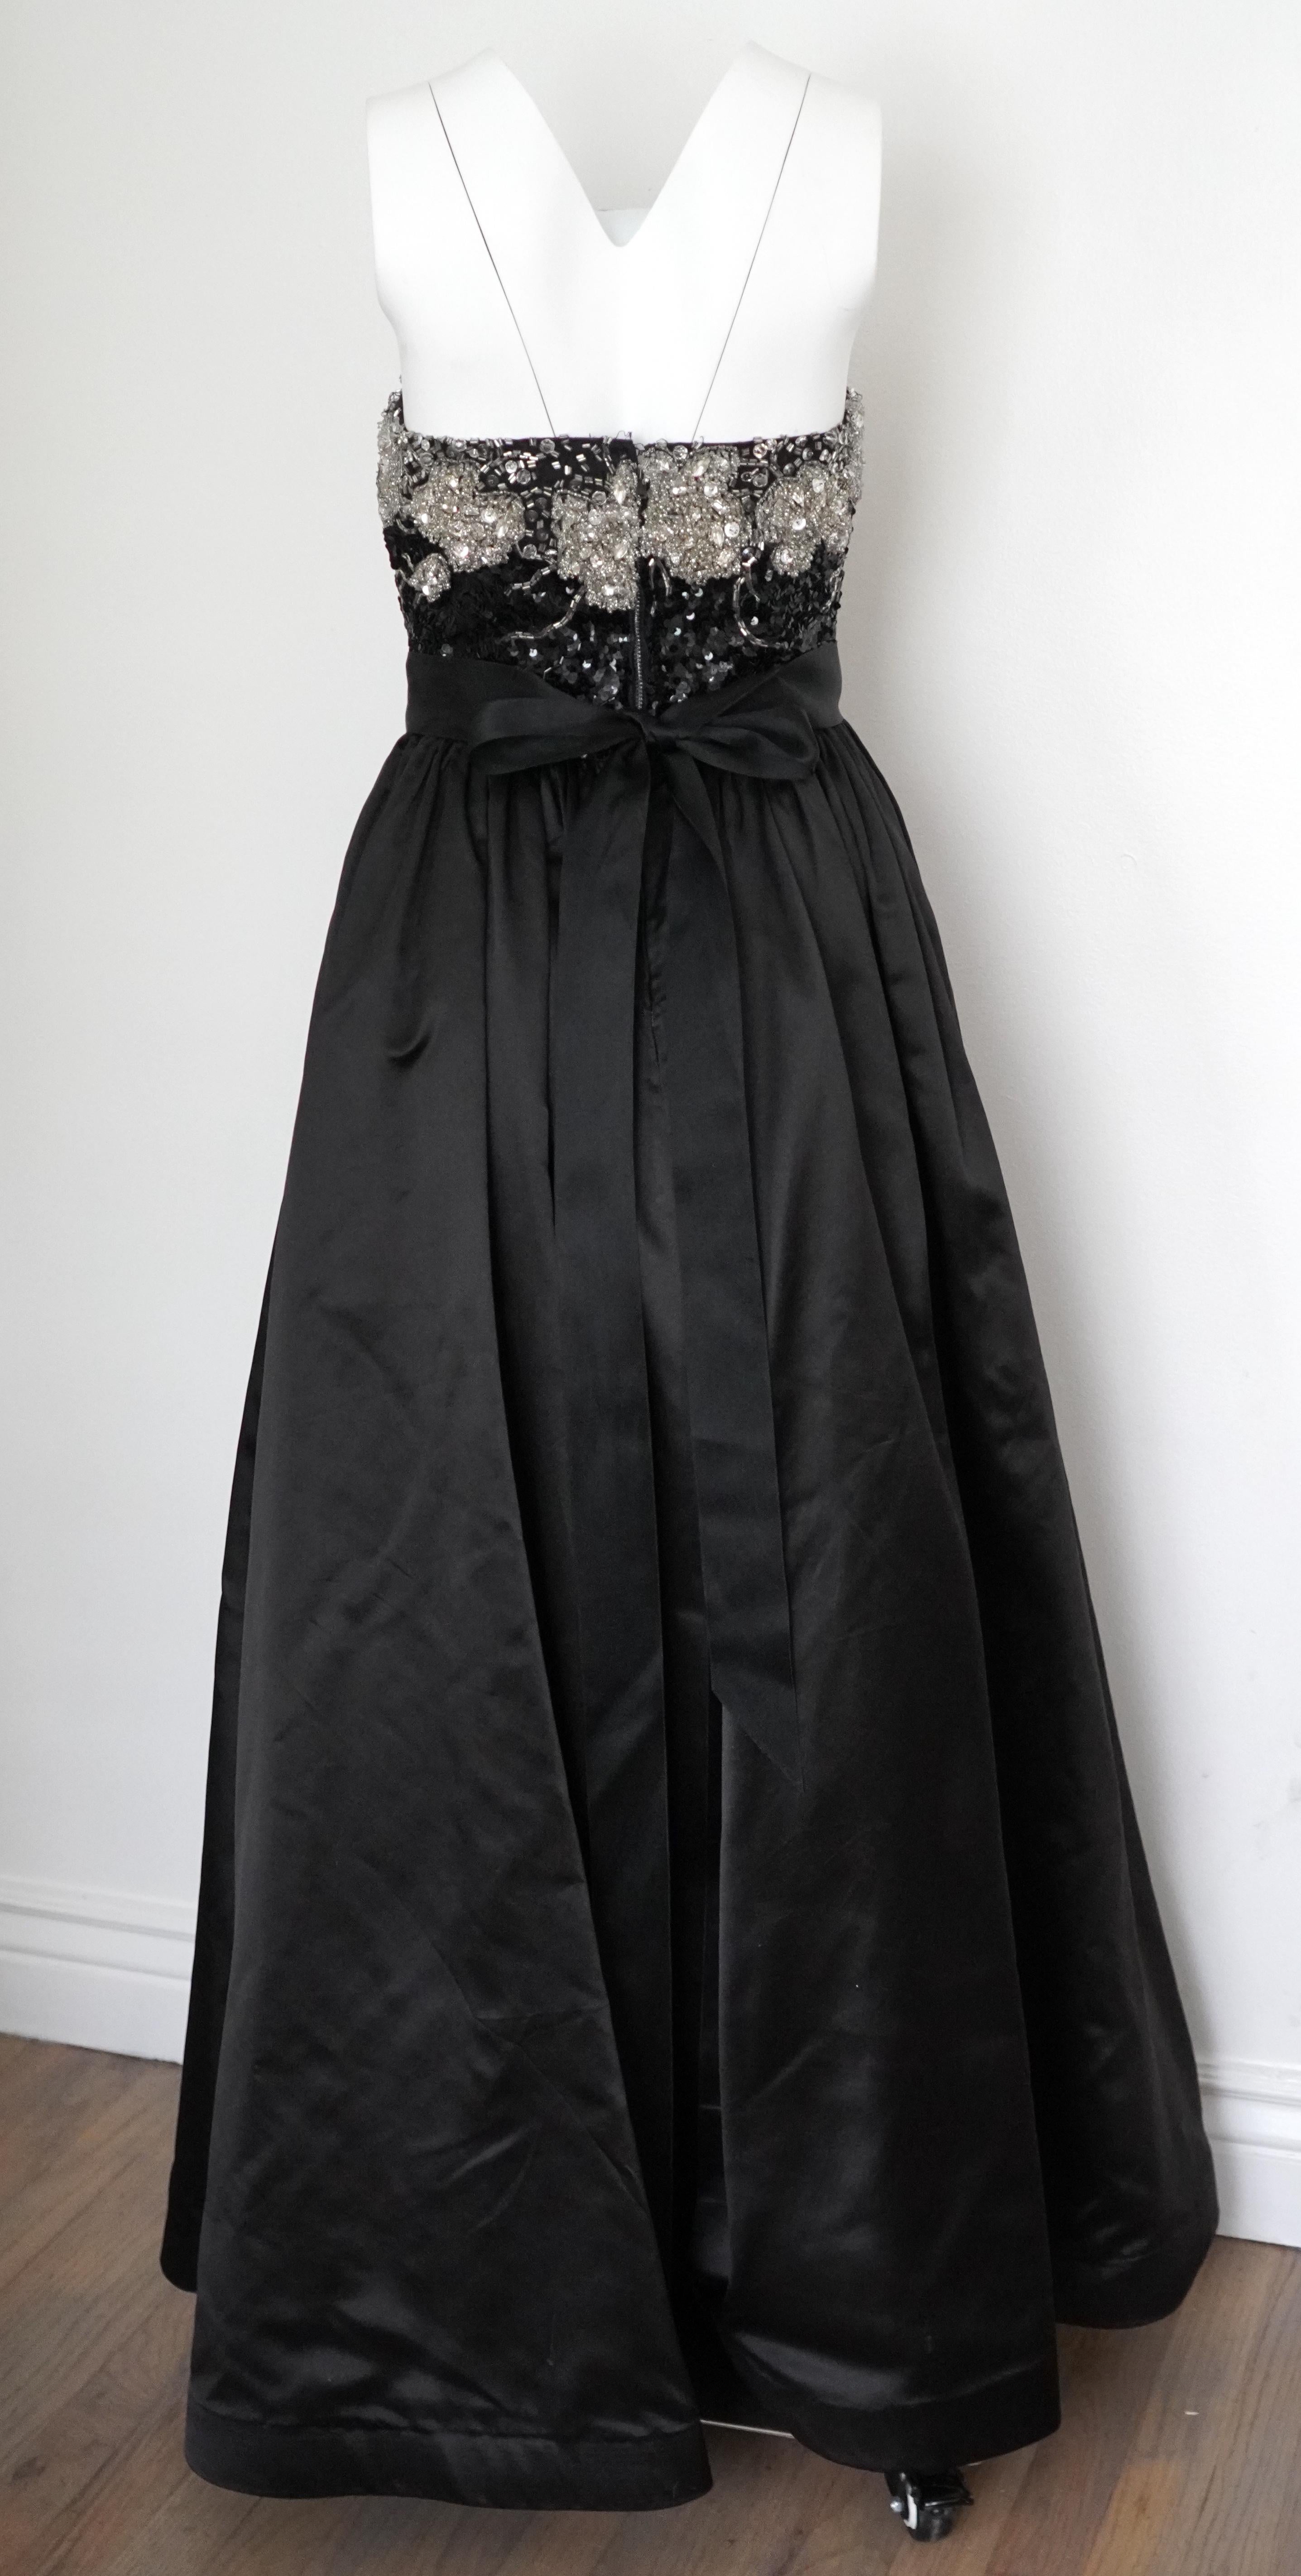 Das Vintage-Abendkleid von Oscar de la Renta ist ein wahres Meisterwerk an Eleganz und Glamour. Dieses trägerlose Kleid aus luxuriöser schwarzer Seide ist wunderschön drapiert und strahlt zeitlose Eleganz aus. Das Mieder ist mit